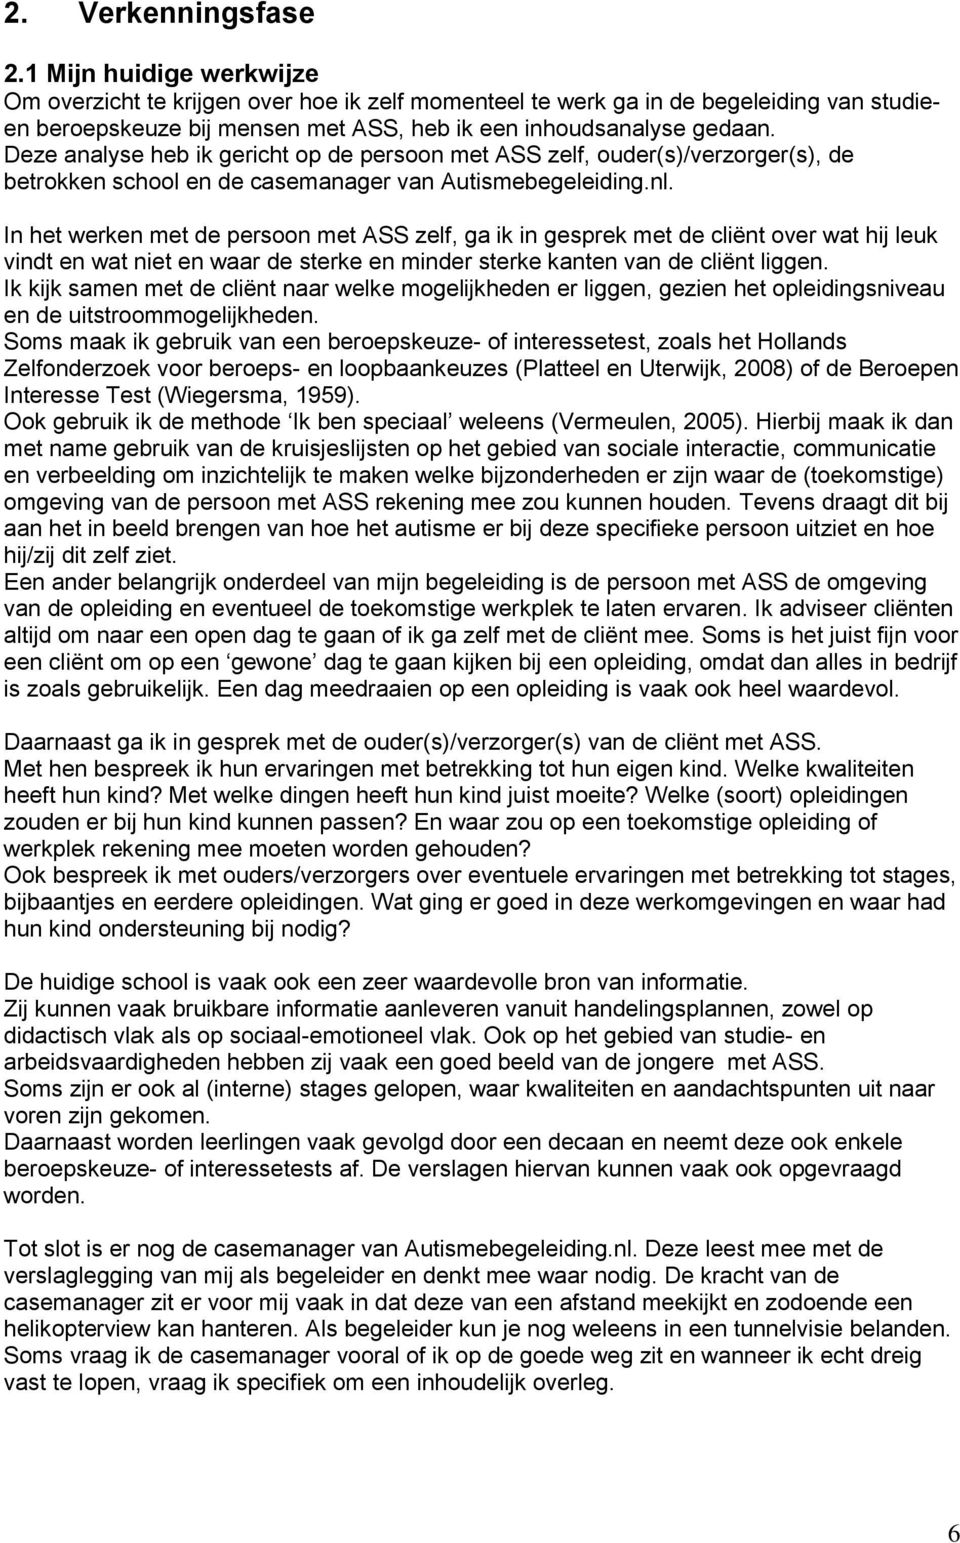 Deze analyse heb ik gericht op de persoon met ASS zelf, ouder(s)/verzorger(s), de betrokken school en de casemanager van Autismebegeleiding.nl.